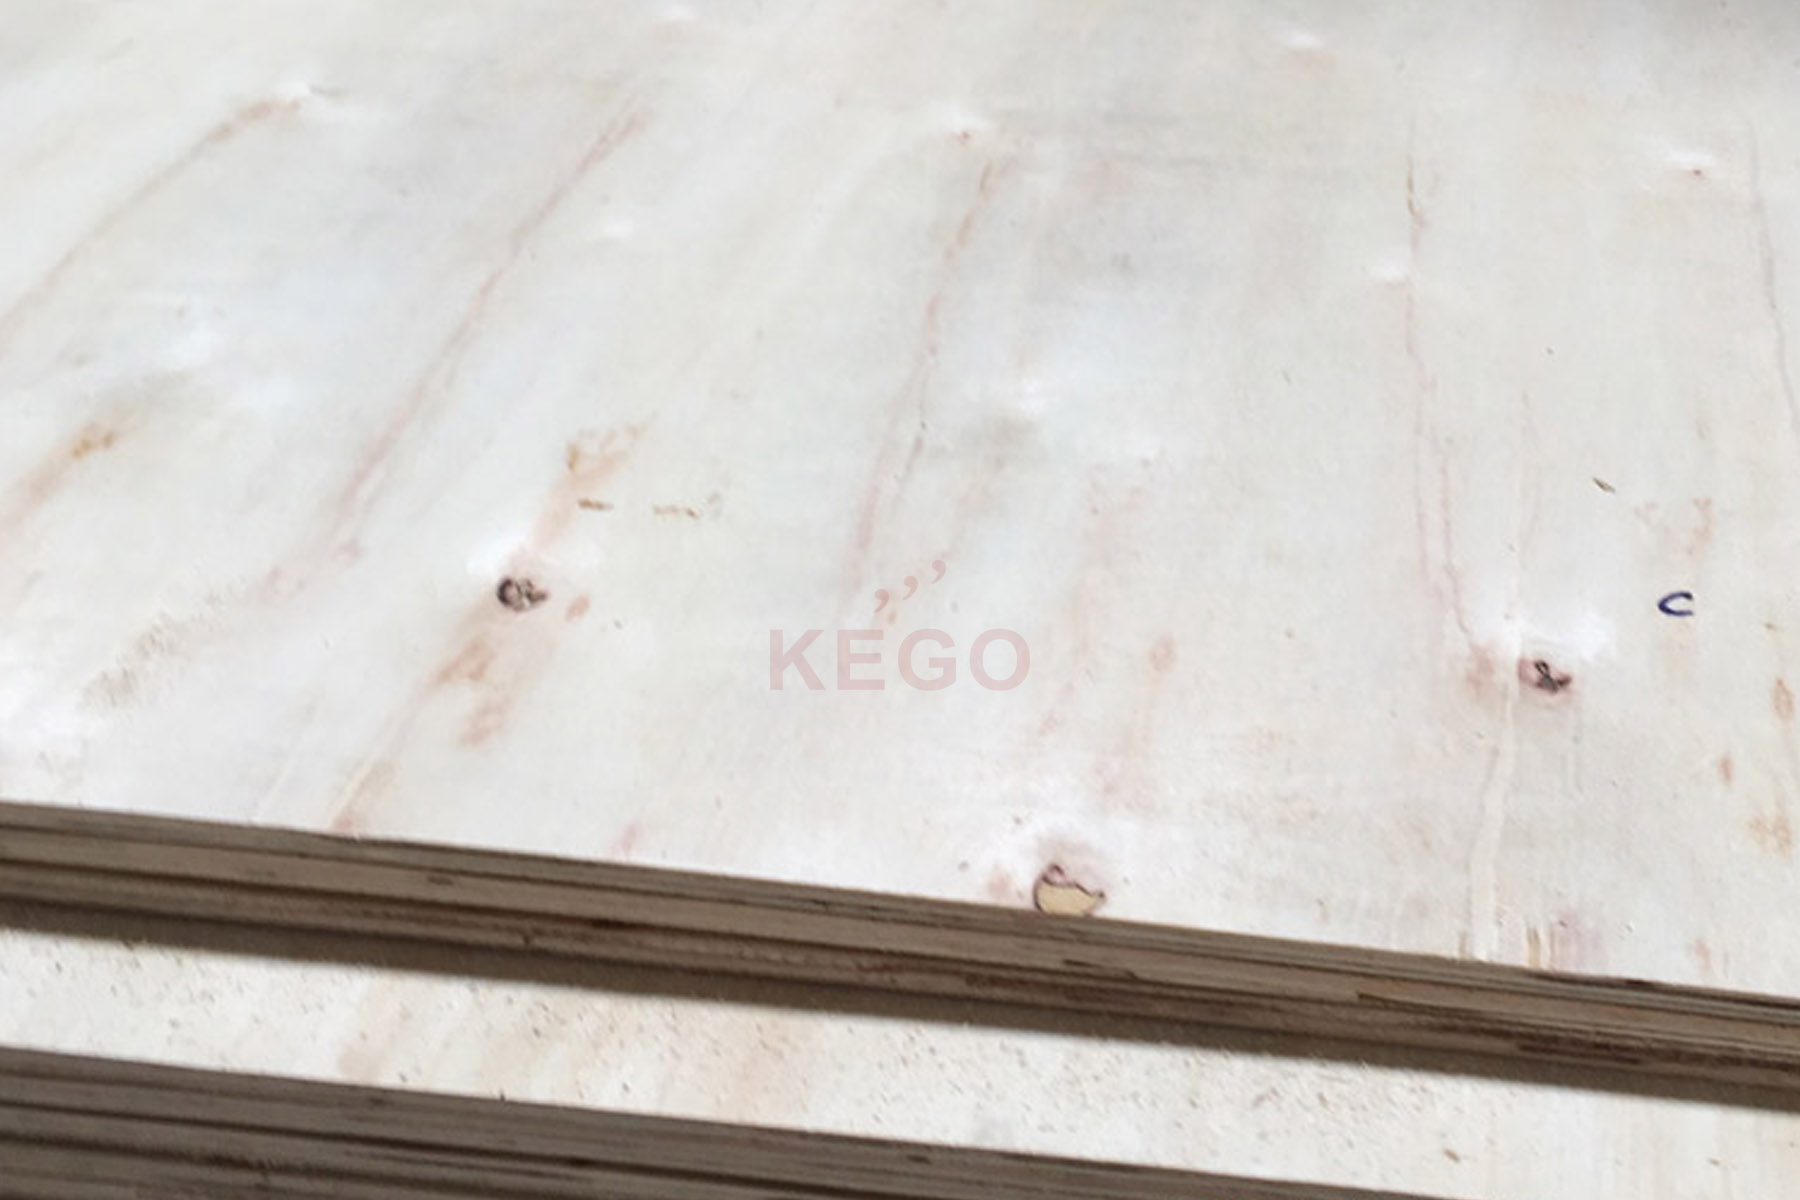 https://kego.com.vn/wp-content/uploads/2016/10/packing-plywood-kego-13.jpg